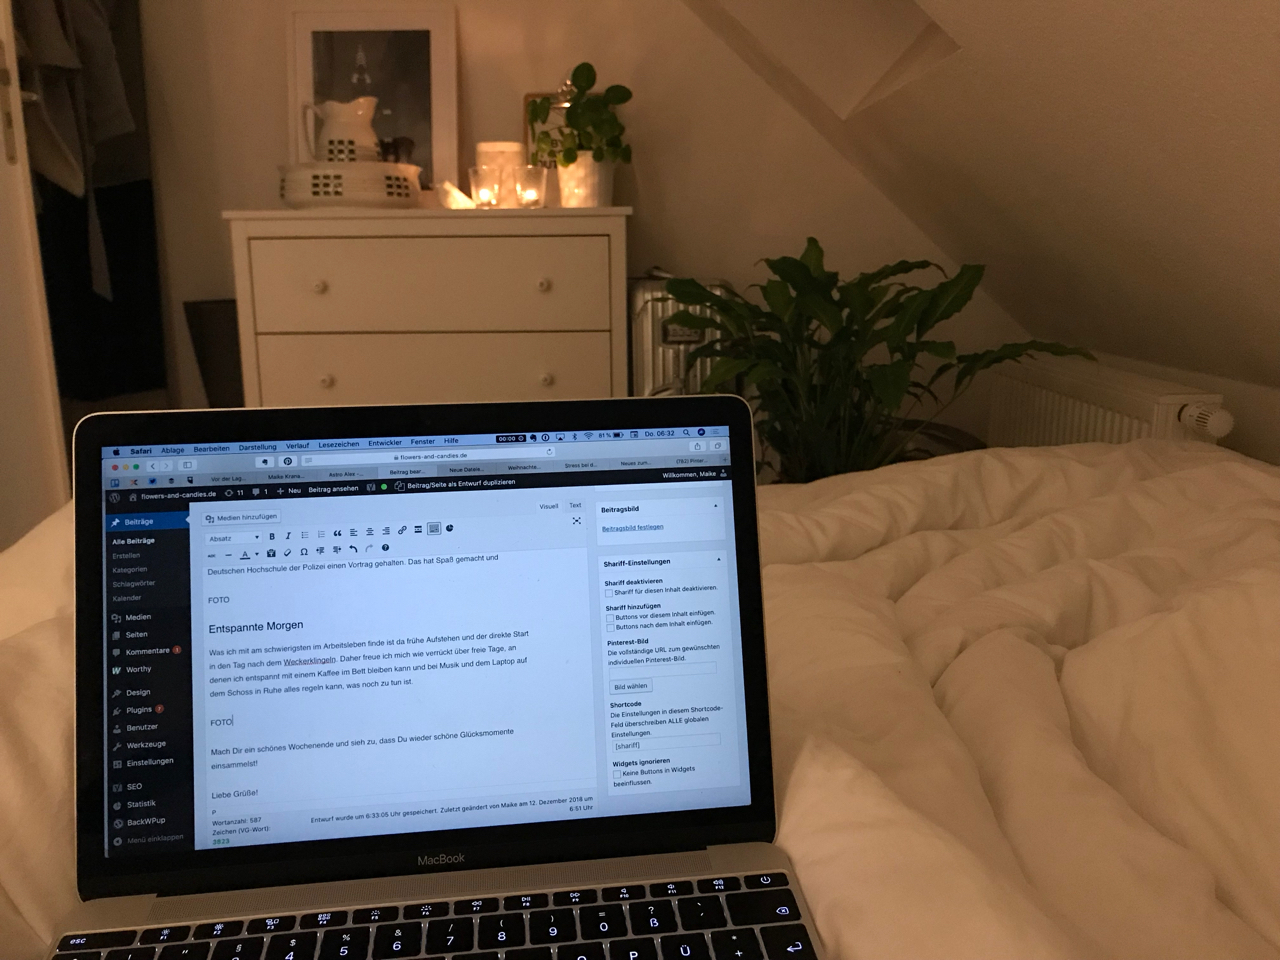 Kaffee im Bett: Laptop auf dem Schoss, im Hintergrund brennen Kerzen